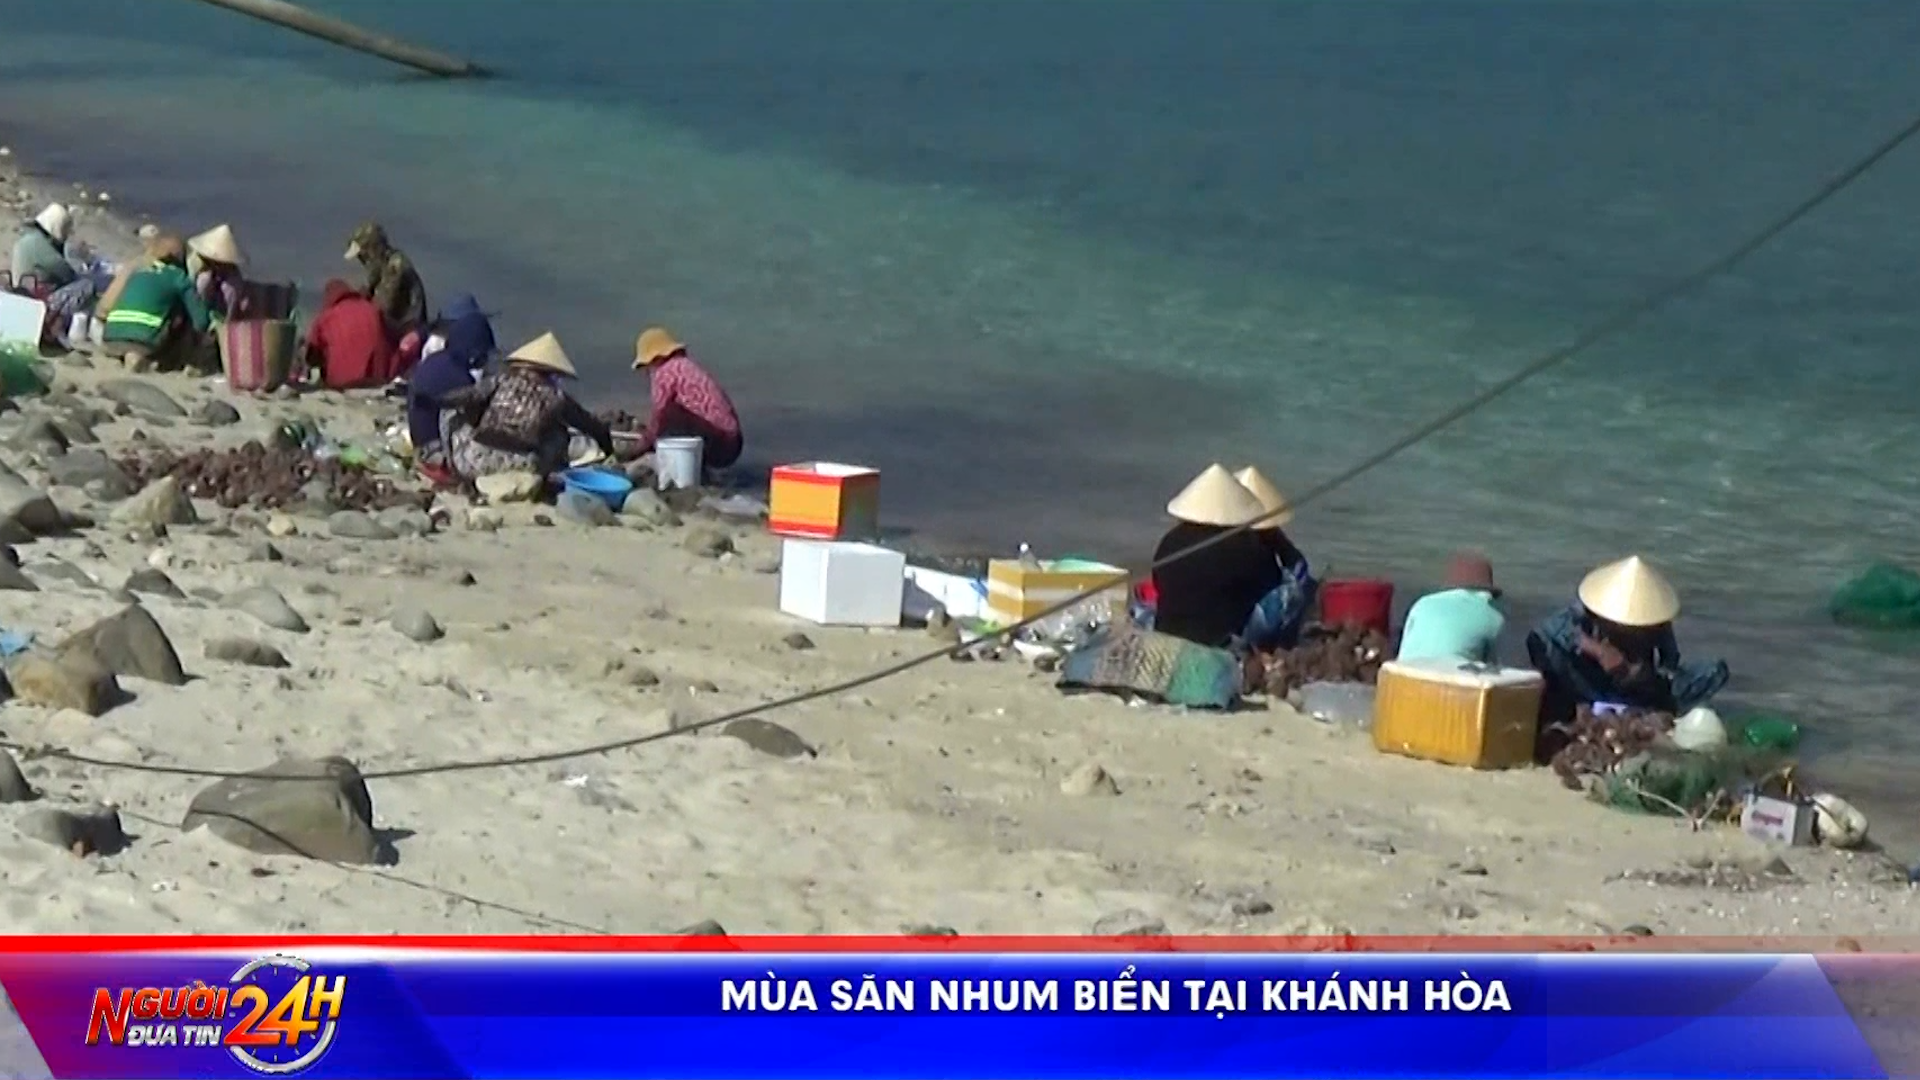 <strong>Mùa săn nhum biển tại Khánh Hòa</strong>